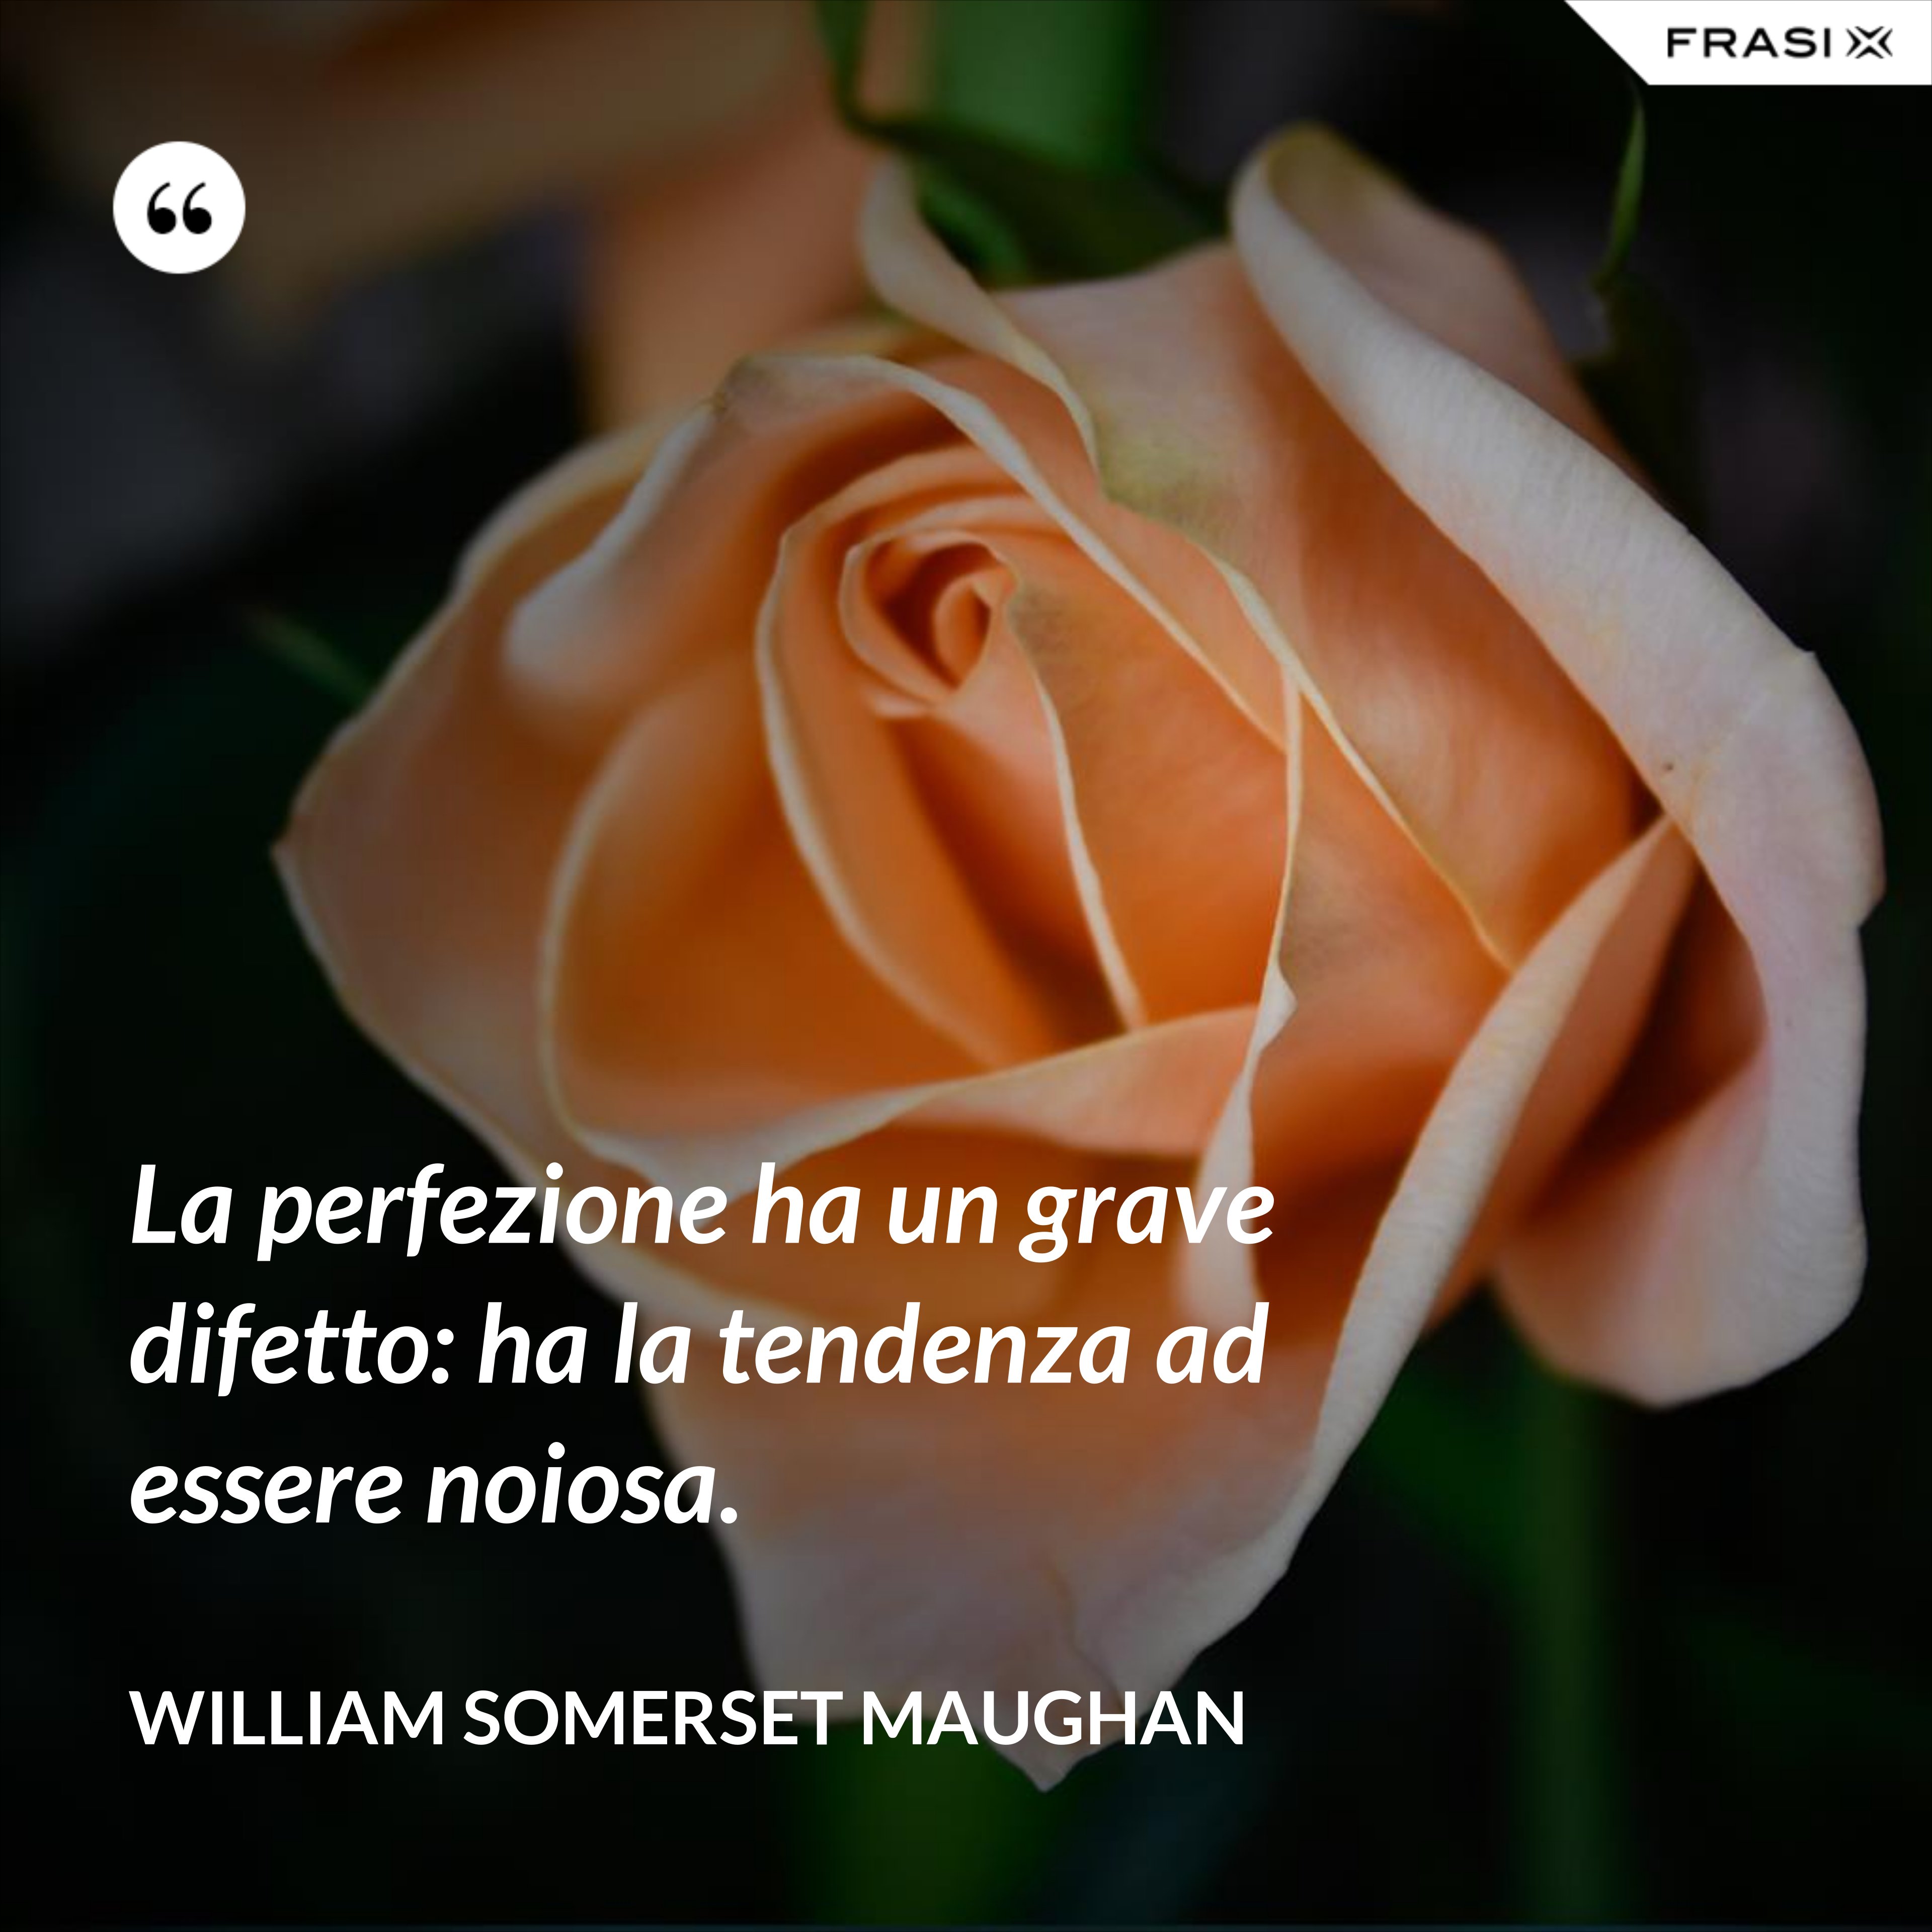 La perfezione ha un grave difetto: ha la tendenza ad essere noiosa. - William Somerset Maughan